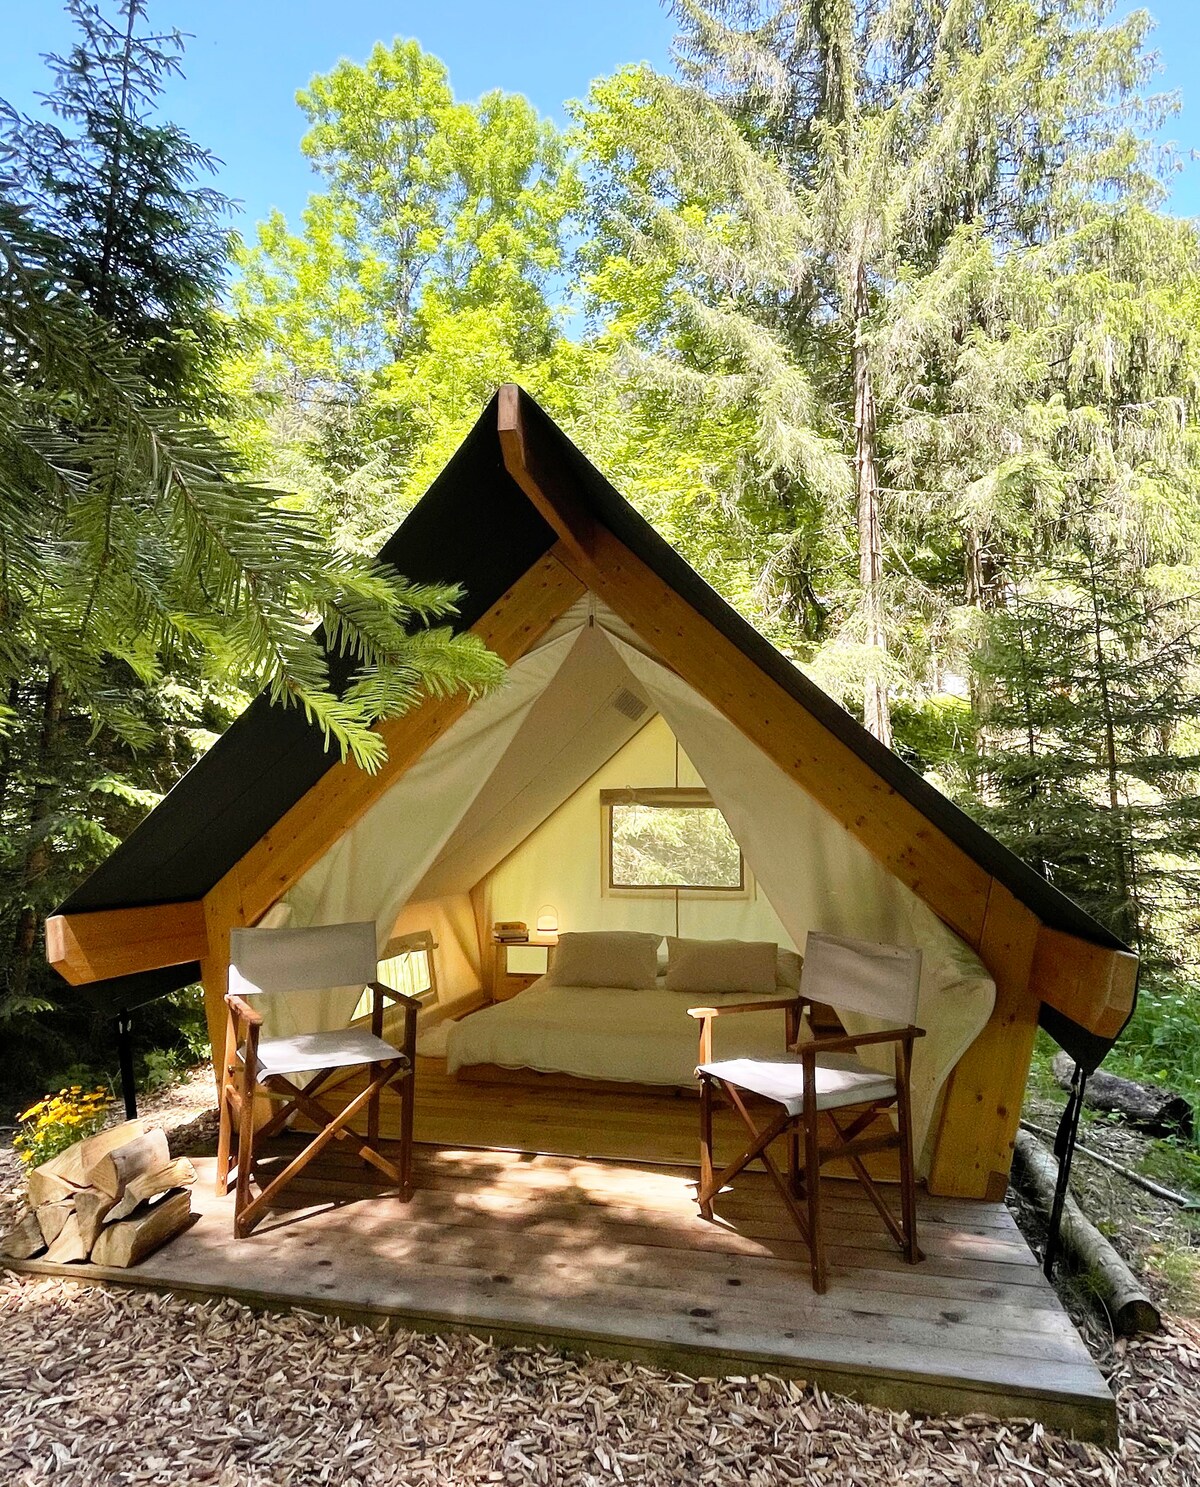 Gorenje pri Zrečah Vacation Rentals & Homes - Slovenske Konjice, Slovenia |  Airbnb